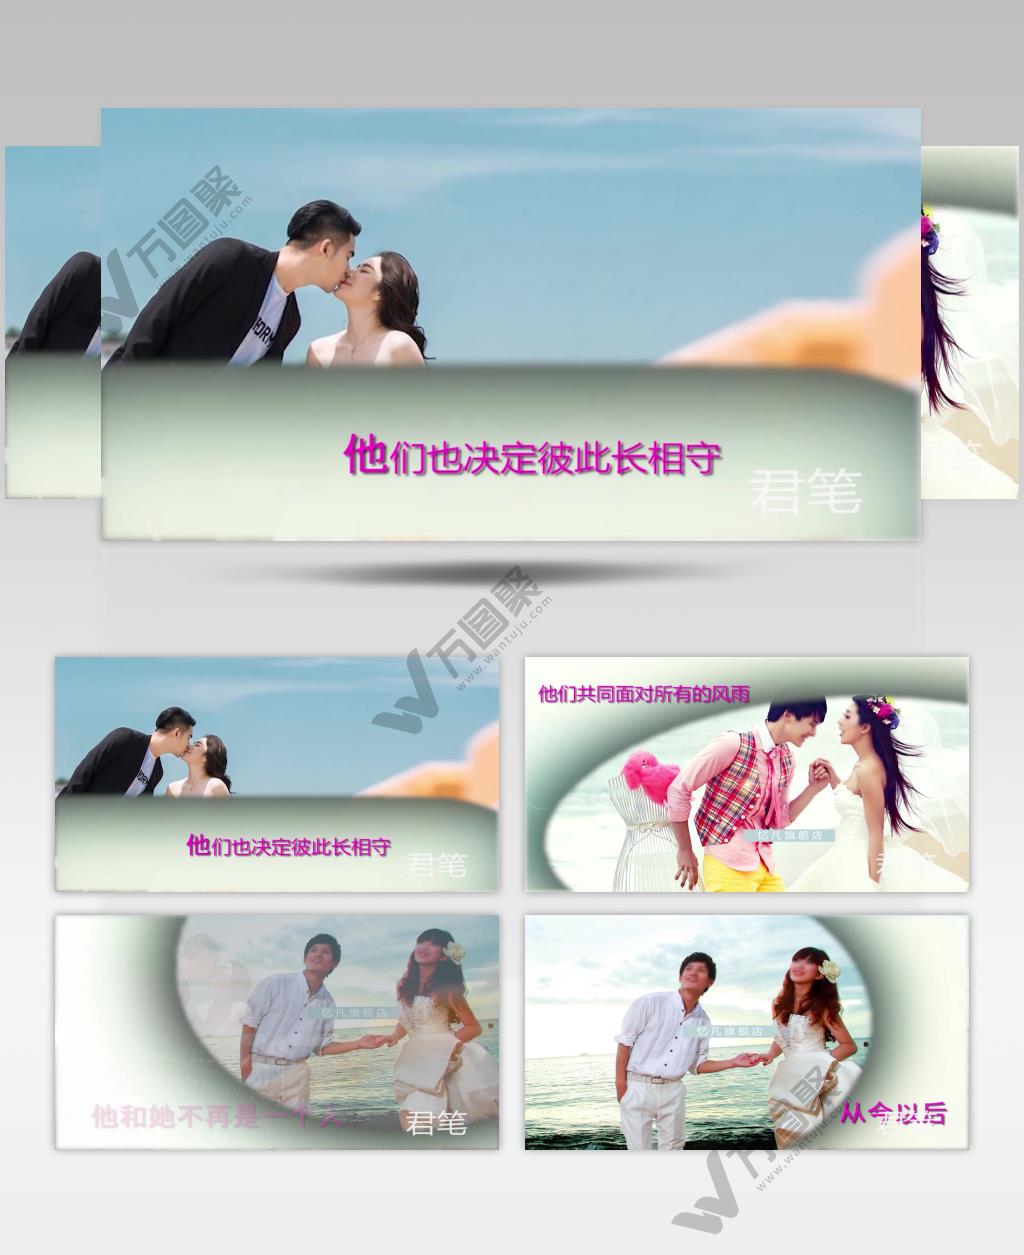 pr：婚礼相册HL-11 唯美婚礼照片显示 pr素材 pr模版  adobe Premiere素材 premiere视频模板 premiere模板